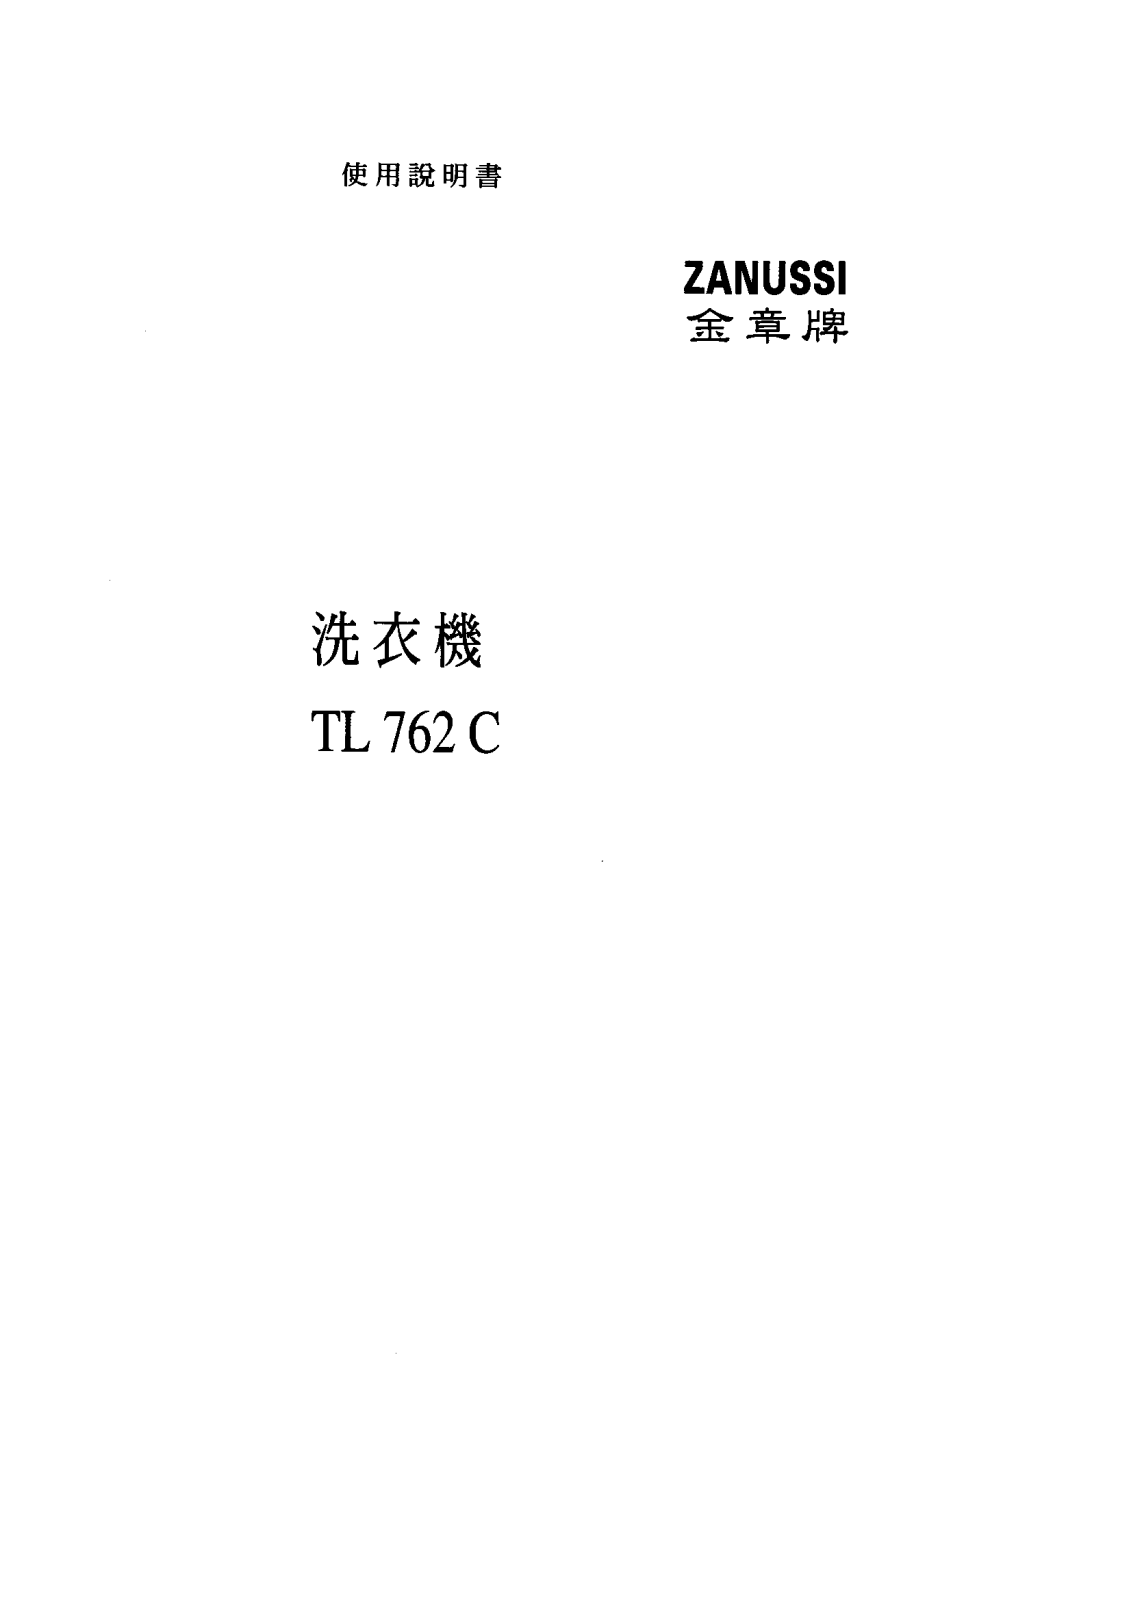 Zanussi TL762C User Manual